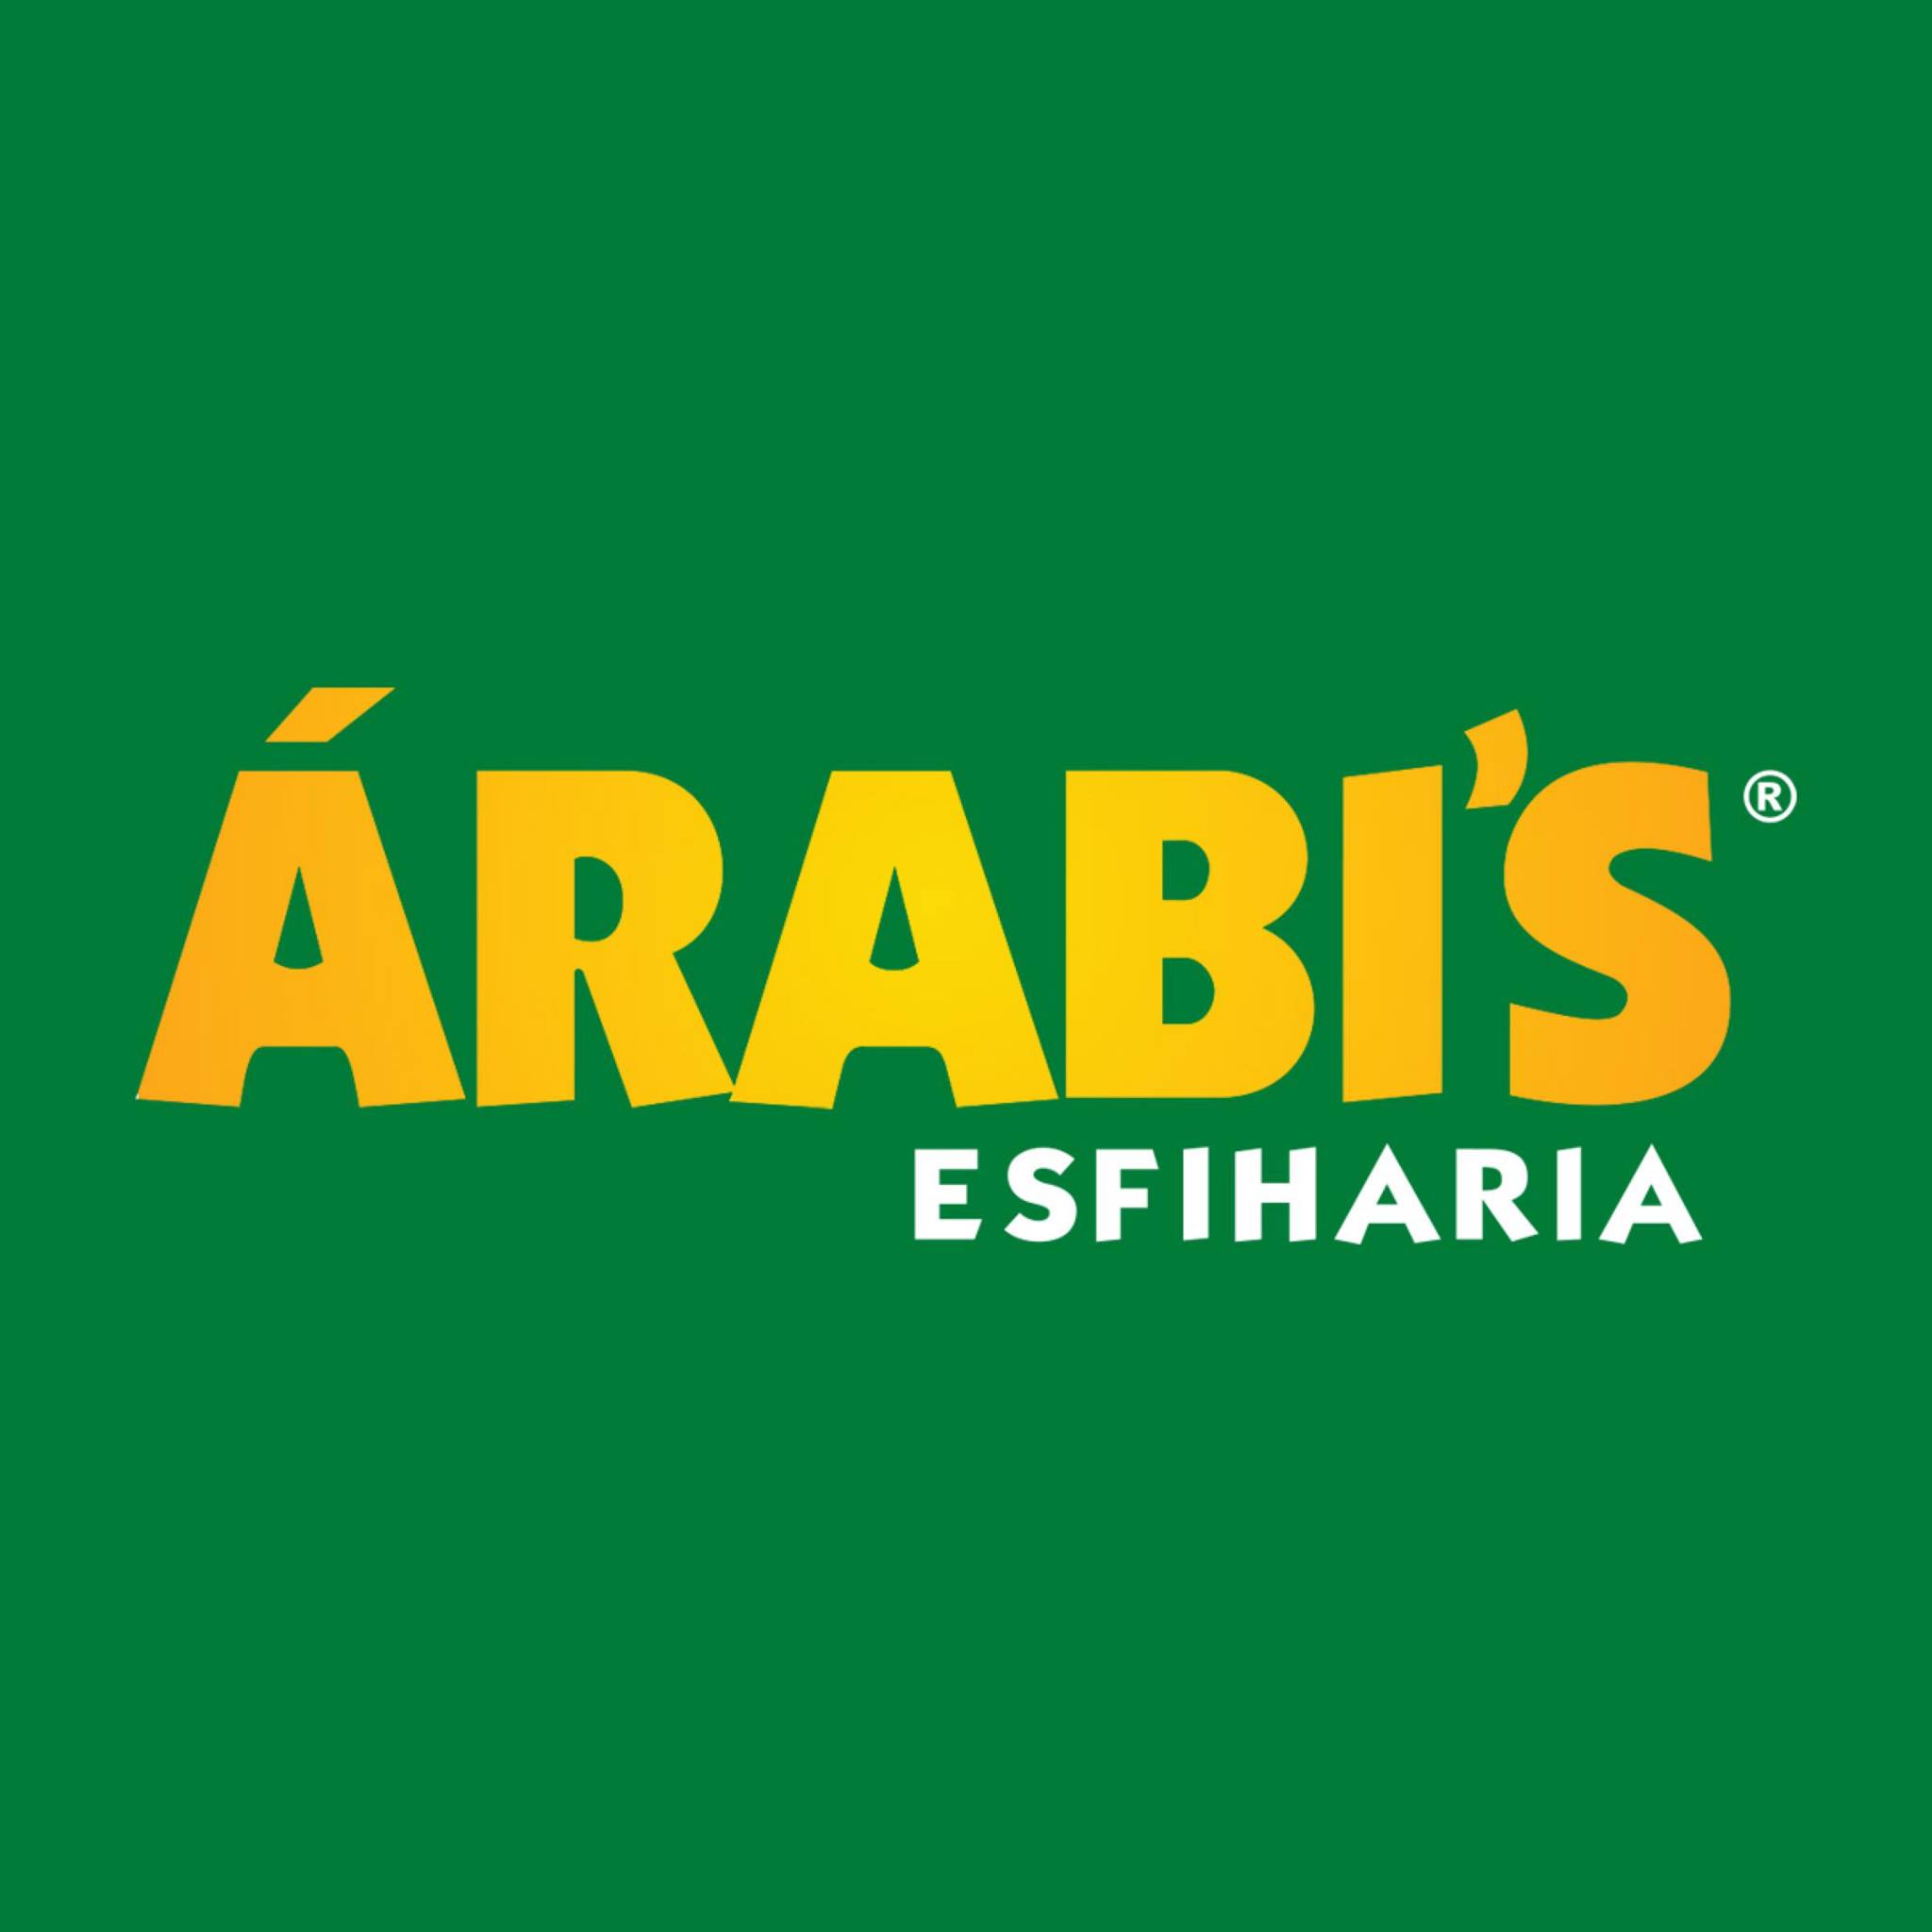 Árabi's Esfiharia